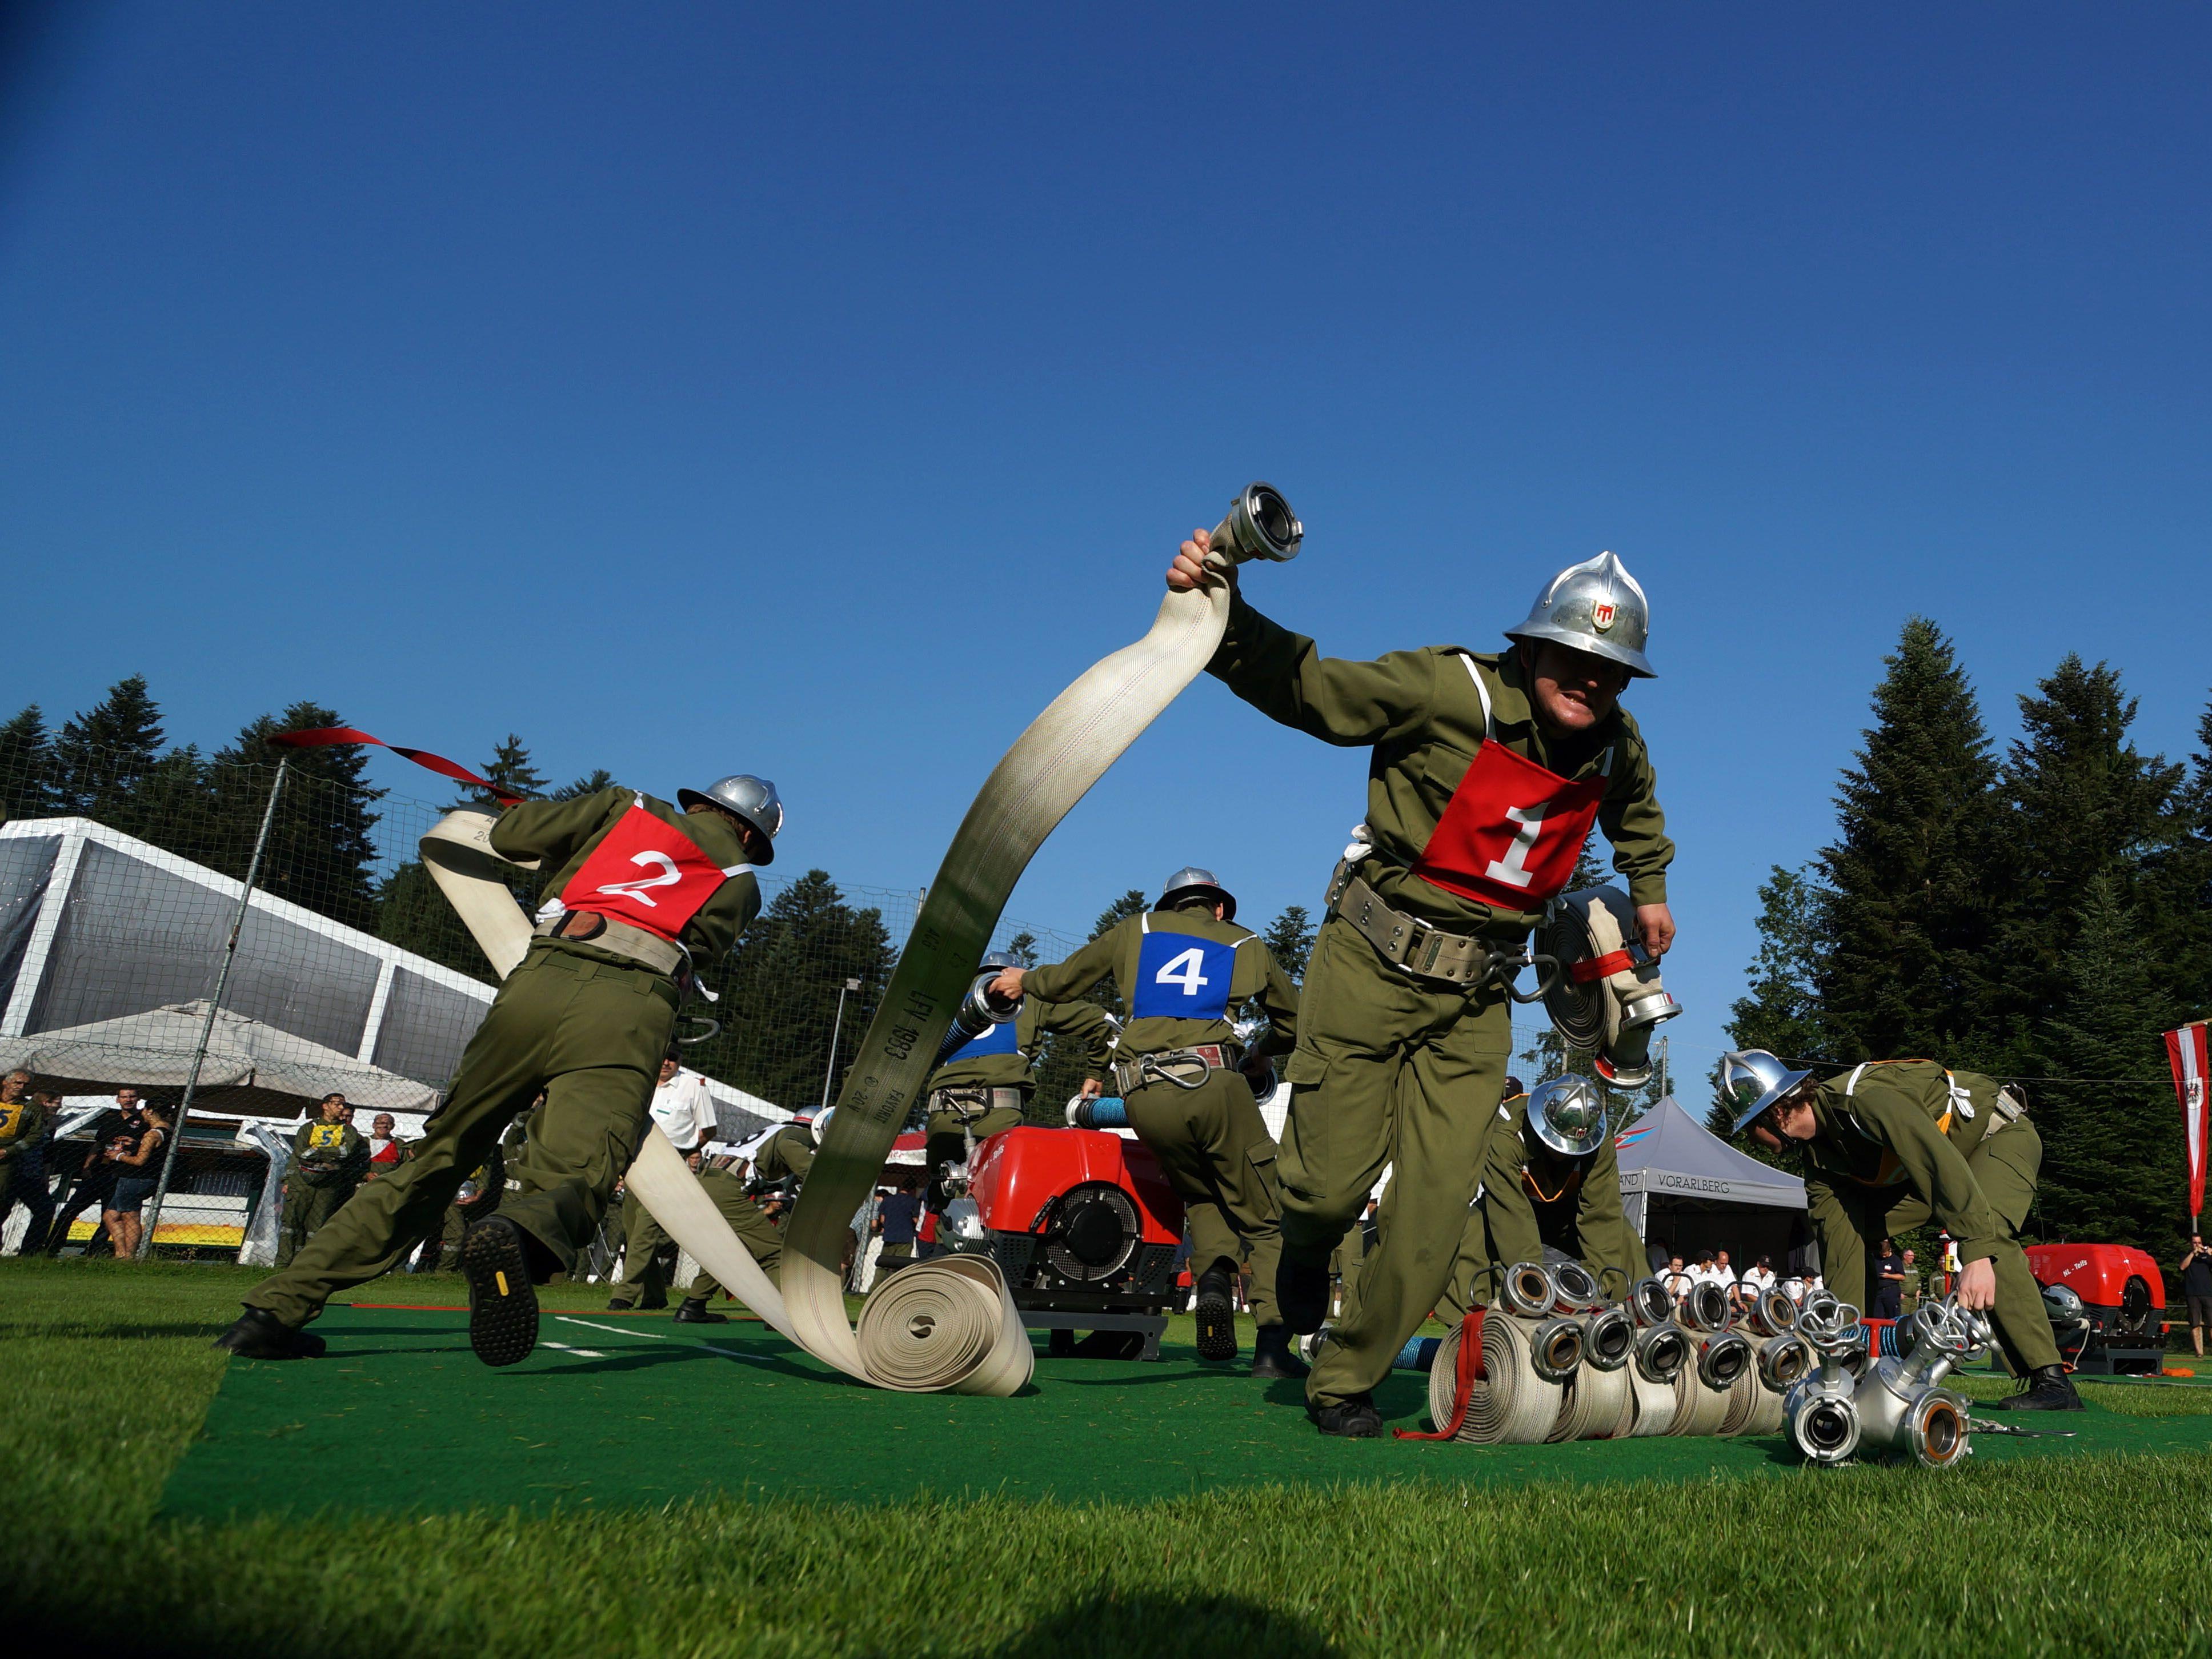 Auch zahlreiche Veranstaltungen finden für die Feuerwehrjugend statt - hier beim Landesfeuerwehrfest in Doren 2013